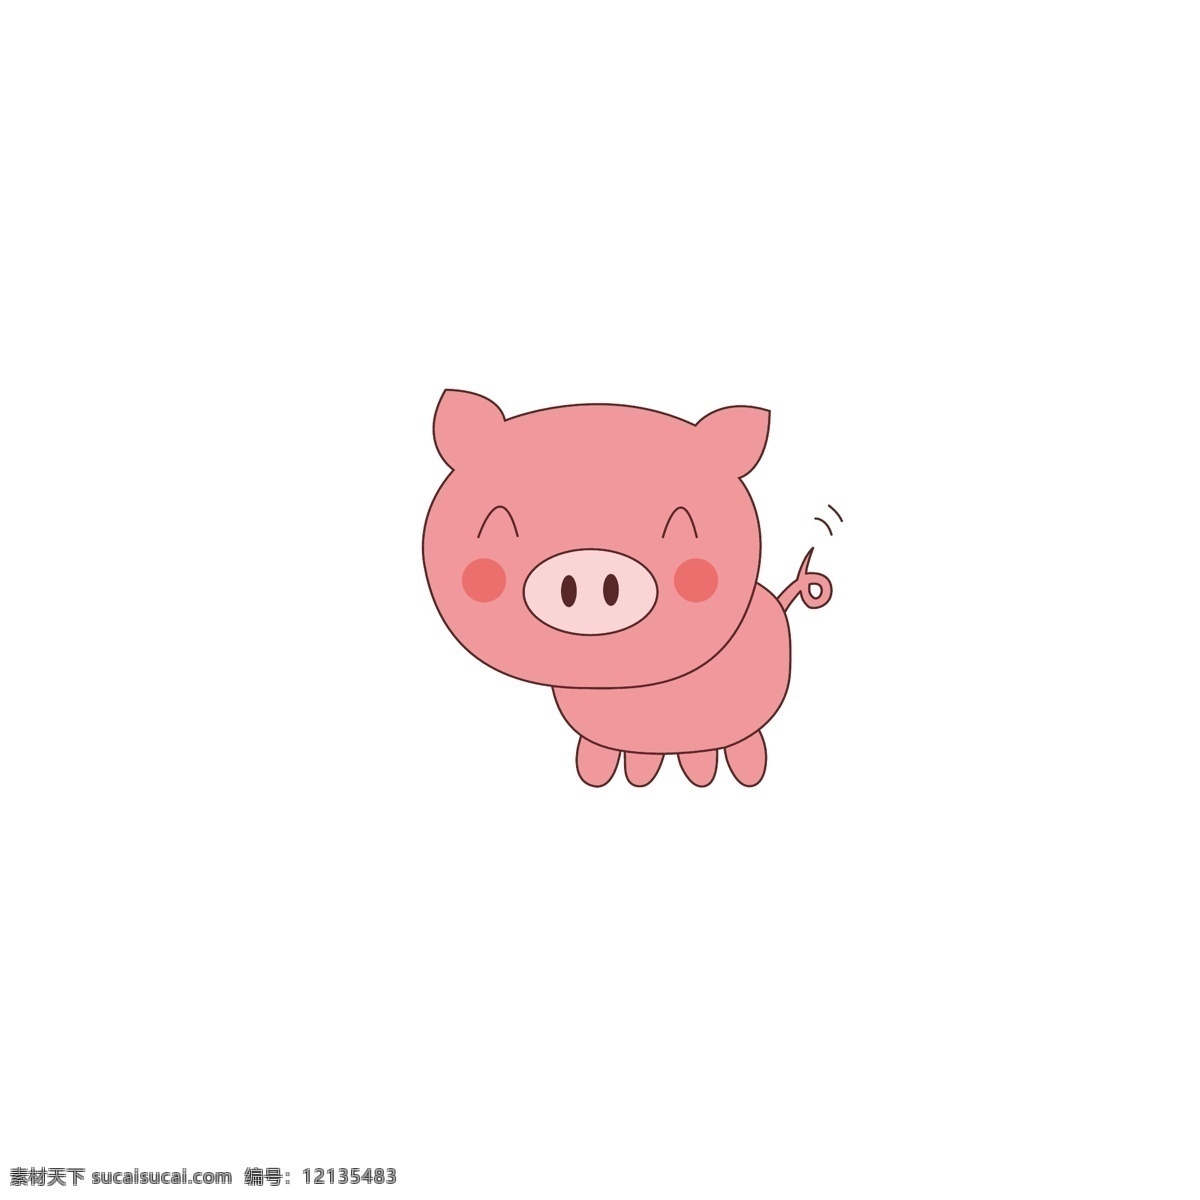 原创 卡通 手绘 矢量 小 猪 小猪 卡通猪 动物